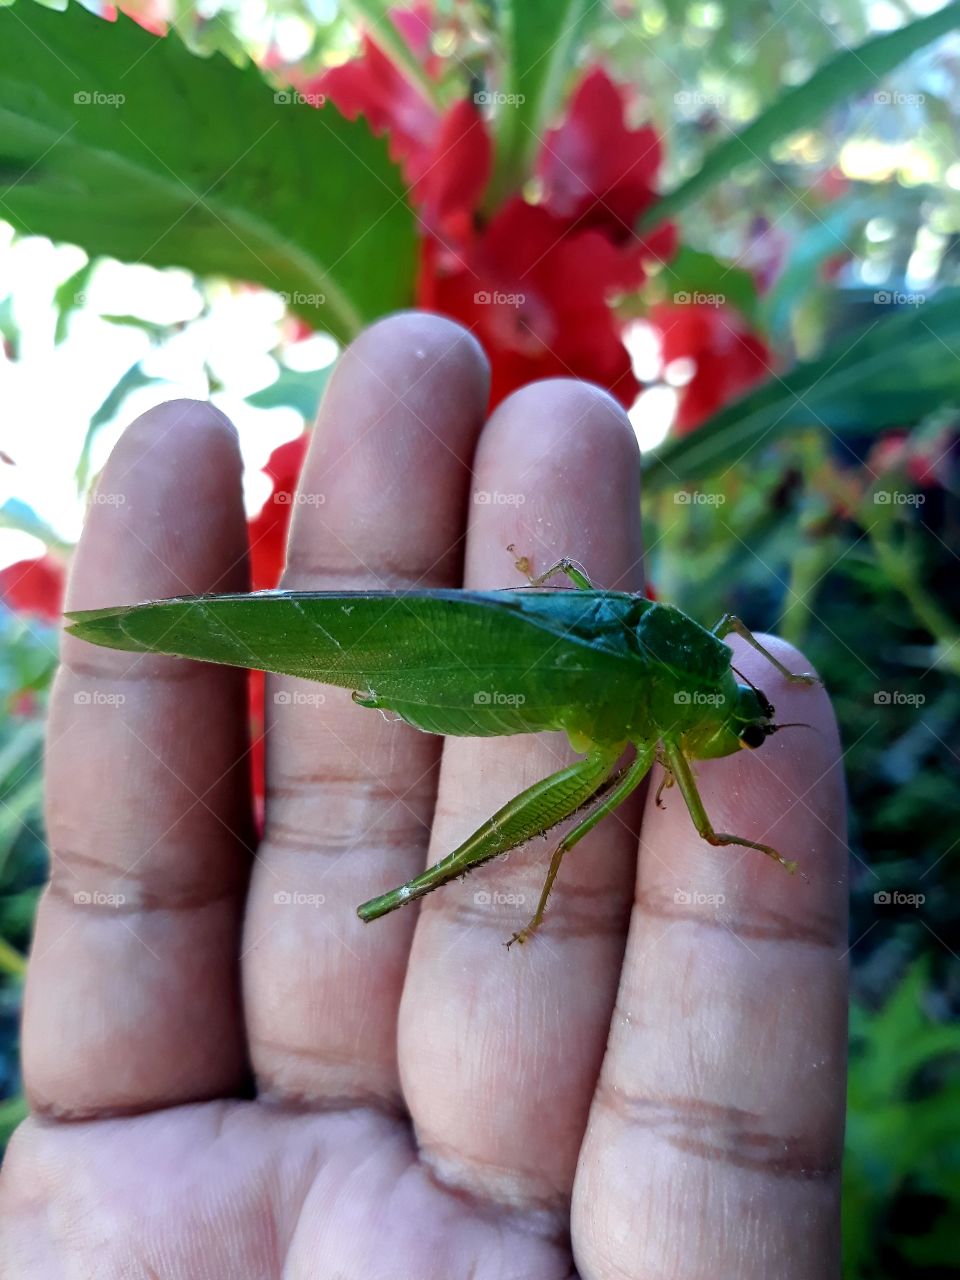 Grasshopper in my hand.